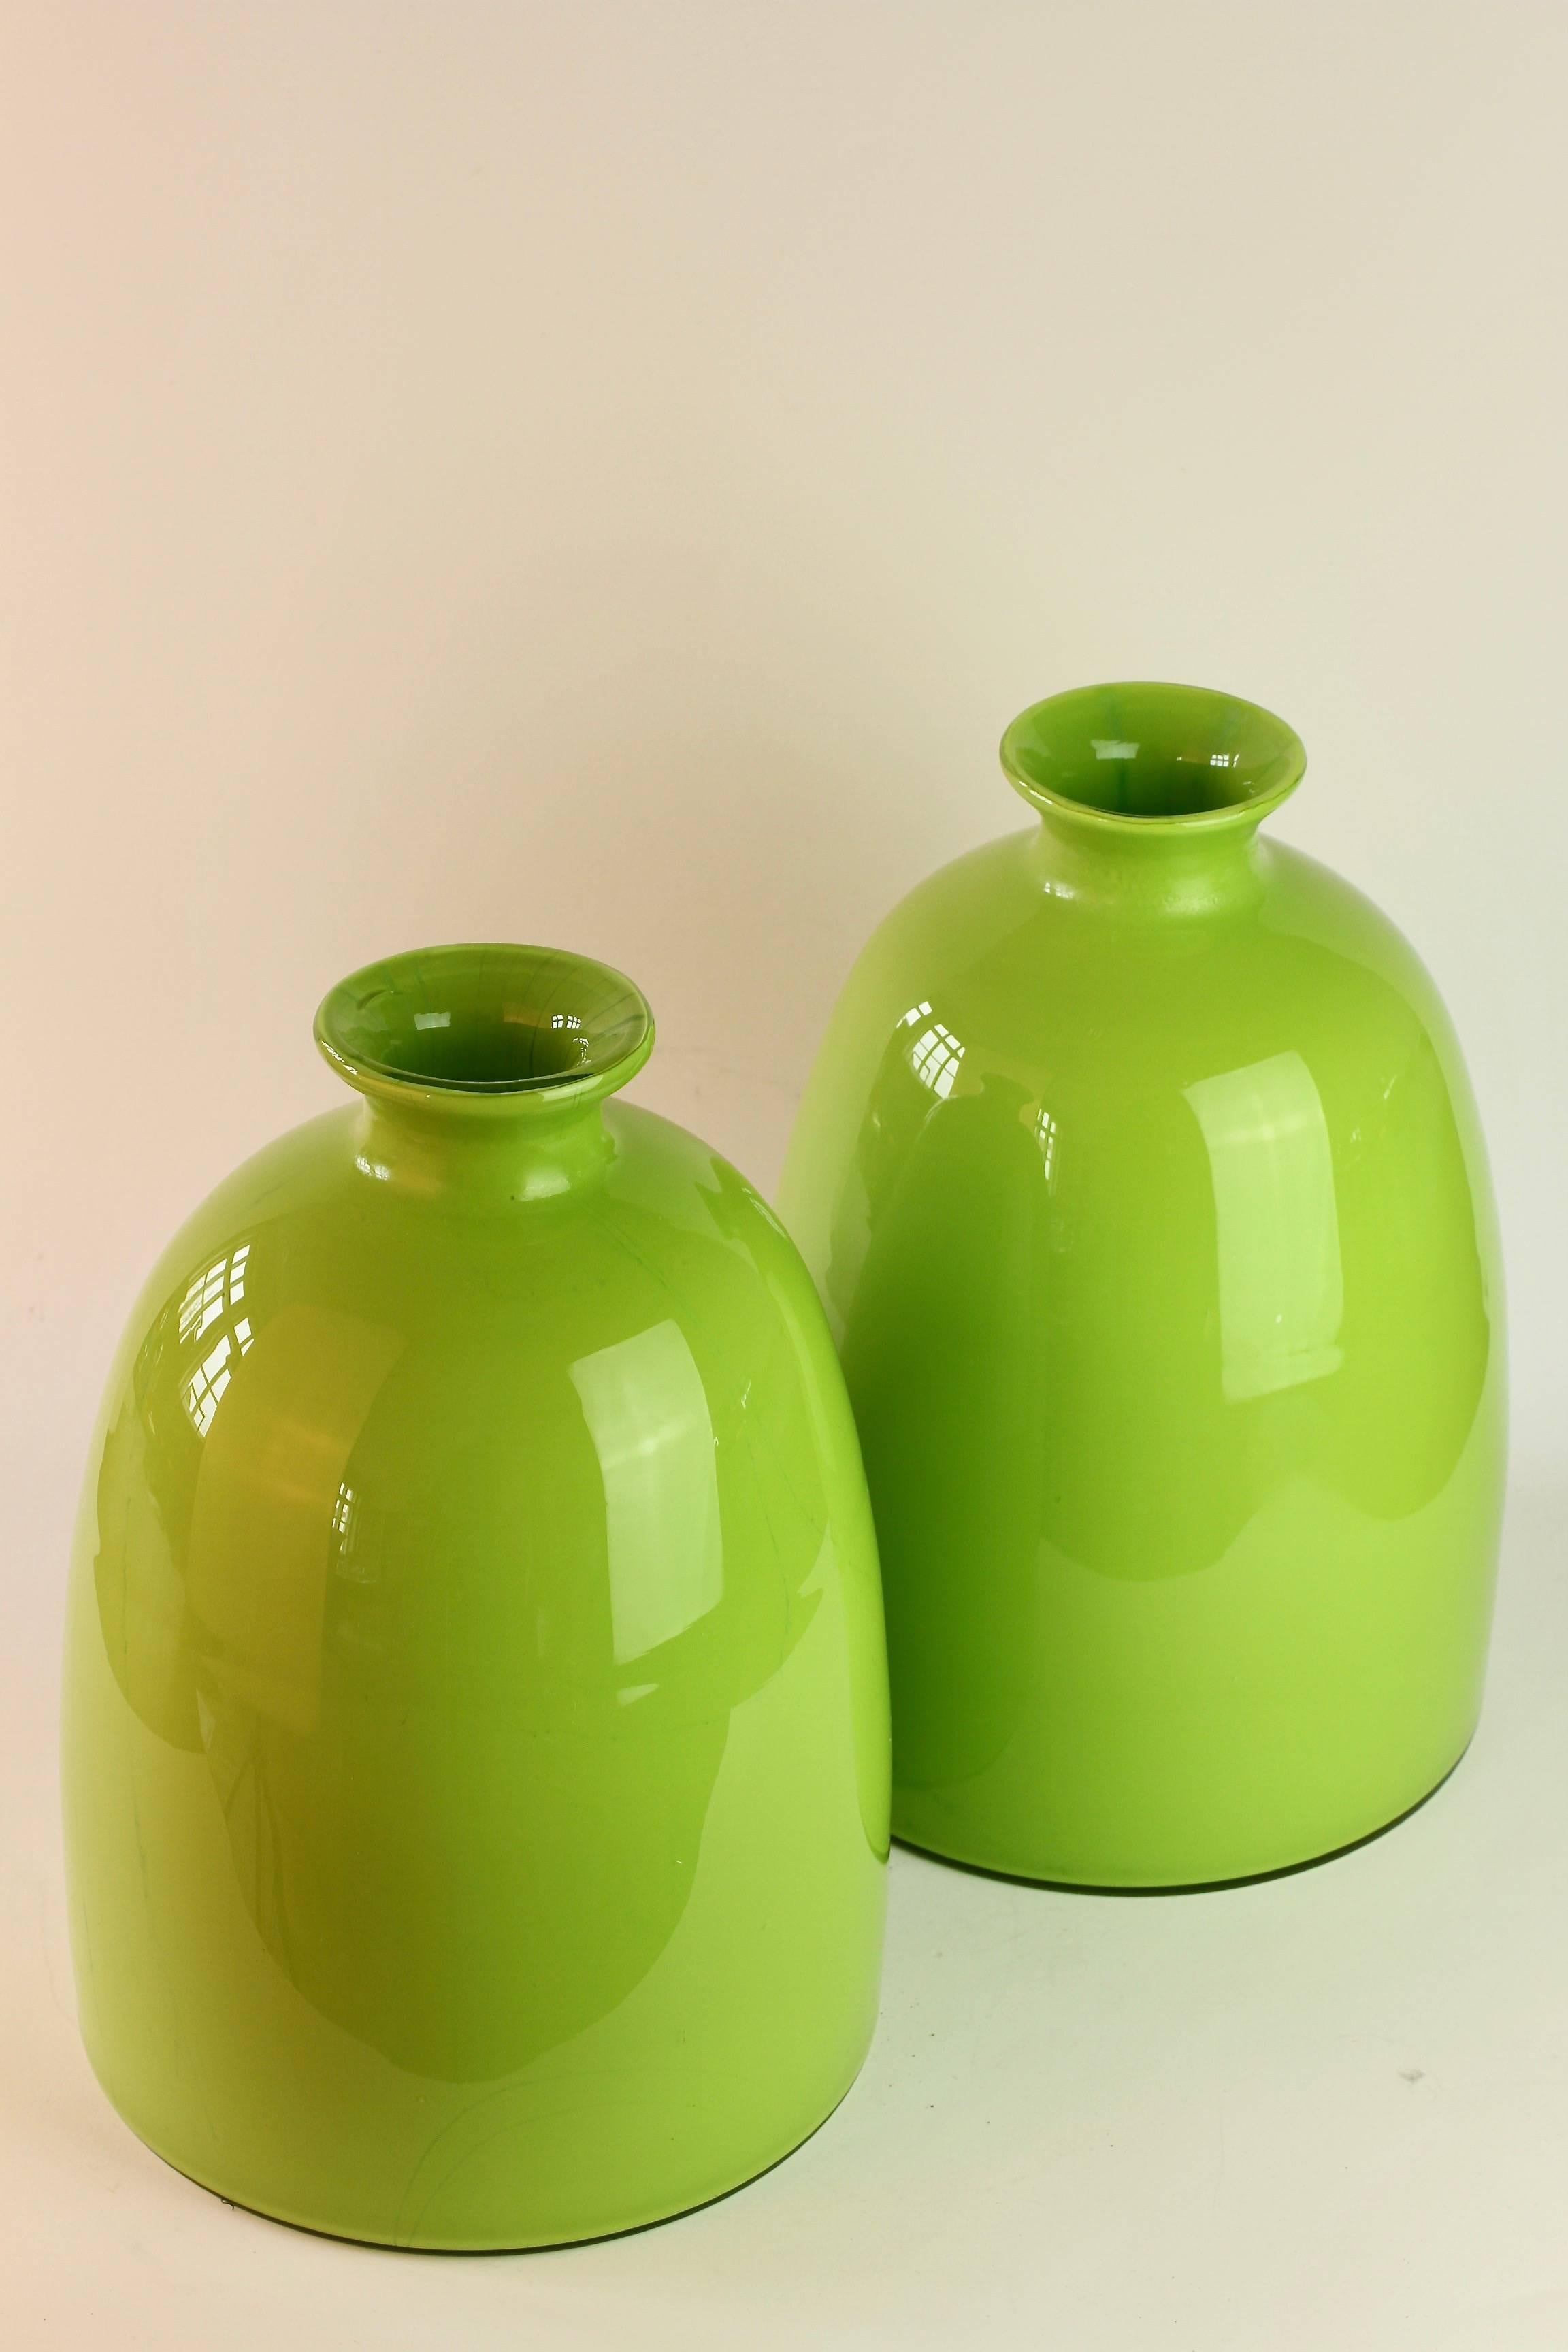 Wunderbar buntes / farbenfrohes und hohes Paar lindgrüner Vasen von Cenedese Vetri aus Murano, Italien. Besonders auffällig ist die Form - mit ihrem flachen Boden und dem schmalen Hals hat sie alle Merkmale eines handgedrehten Töpferstücks mit dem